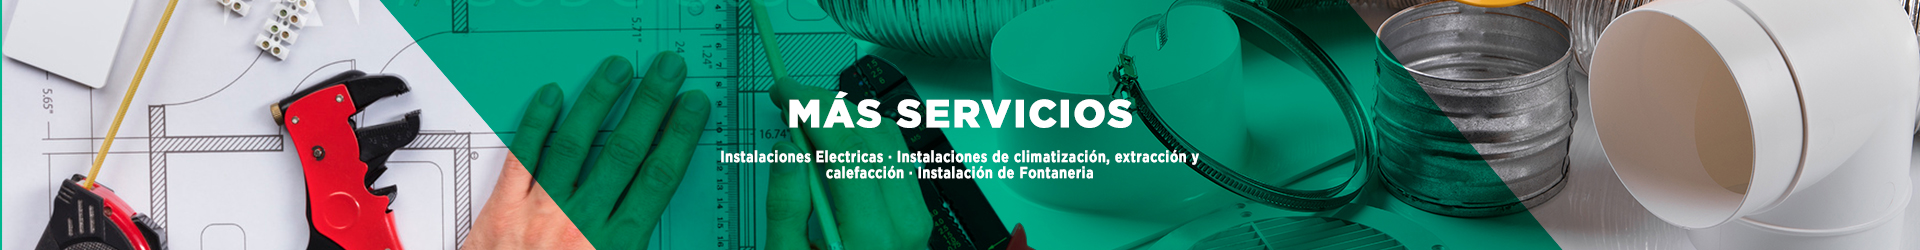 Instalaciones Electricas · Instalaciones de climatización, extracción y calefacción · Instalación de Fontaneria